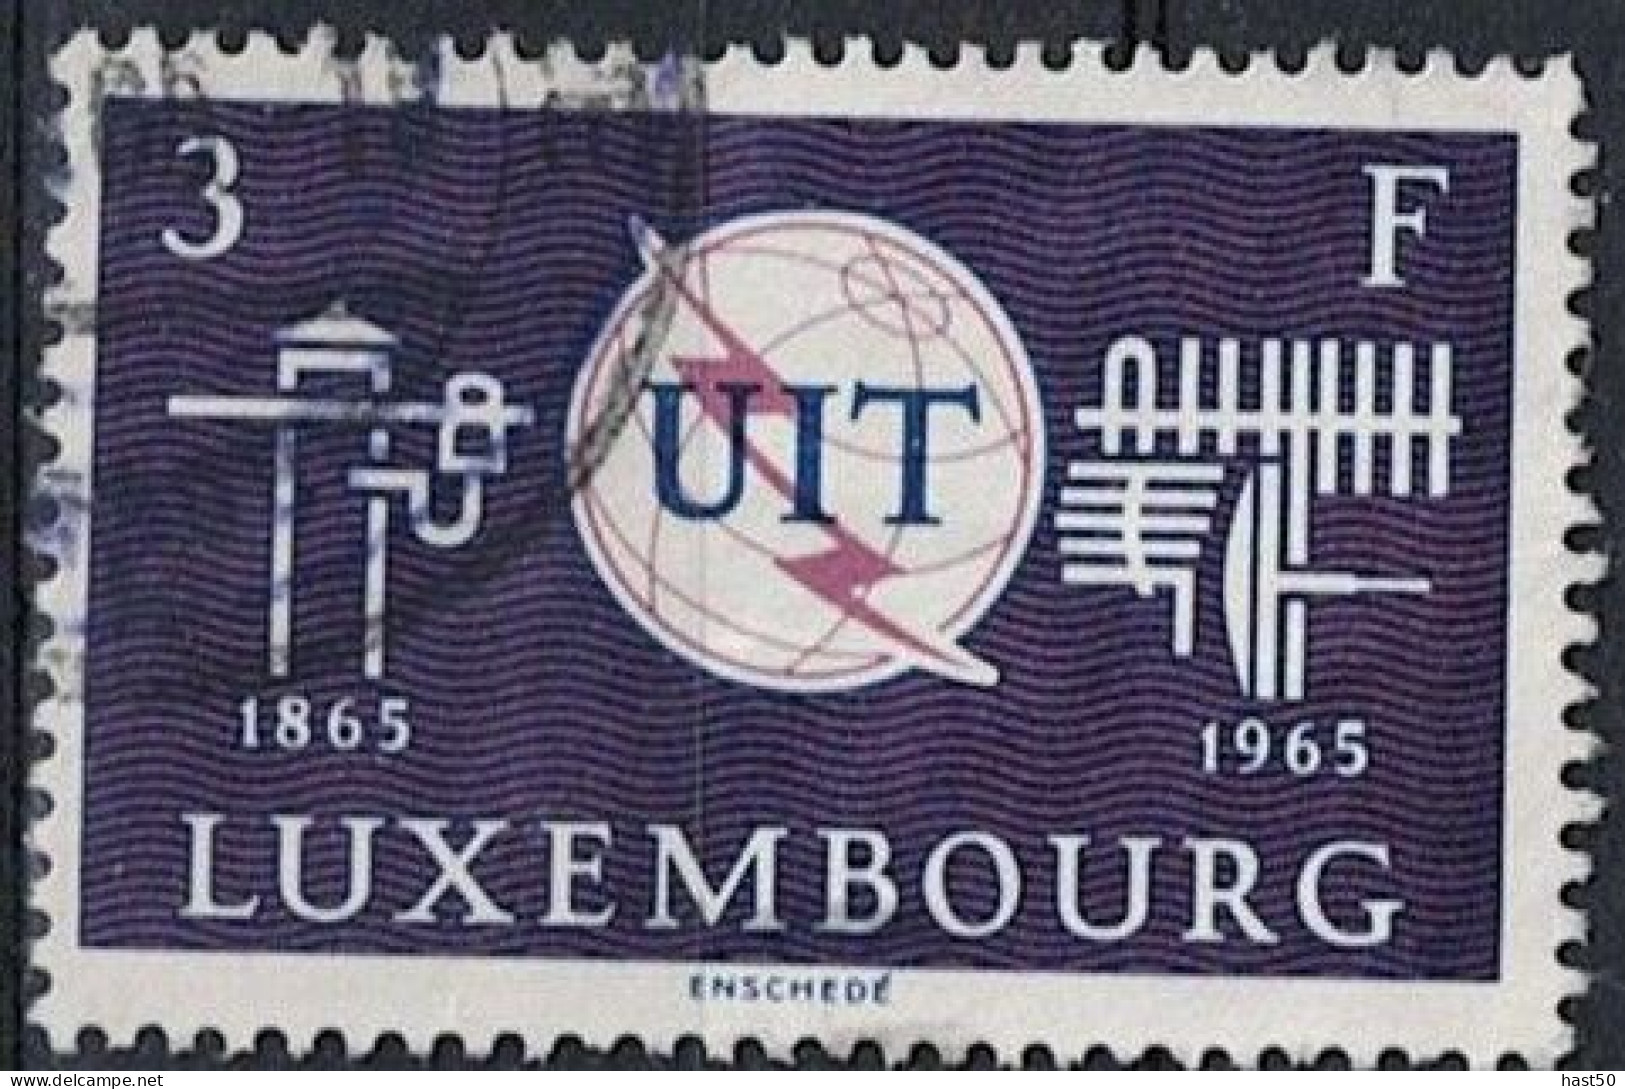 Luxemburg - 100 Jahre UIT (MiNr: 714) 1965 - Gest Used Obl - Oblitérés